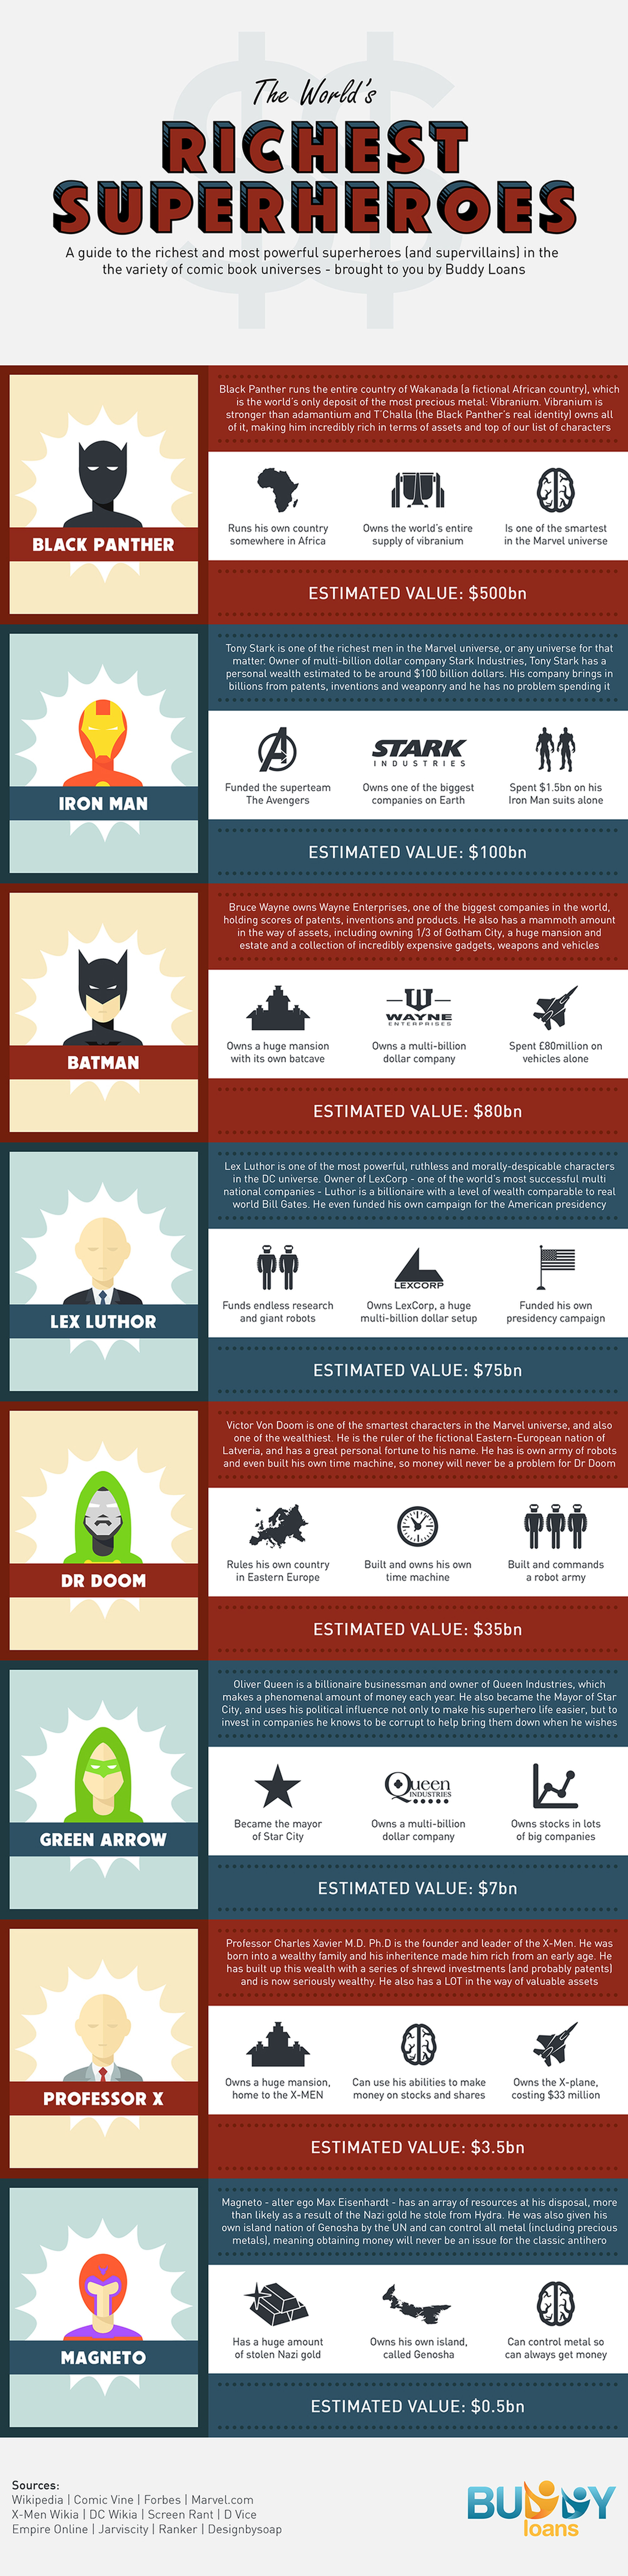 ¿Quiénes son los superhéroes y villanos más ricos del mundo?